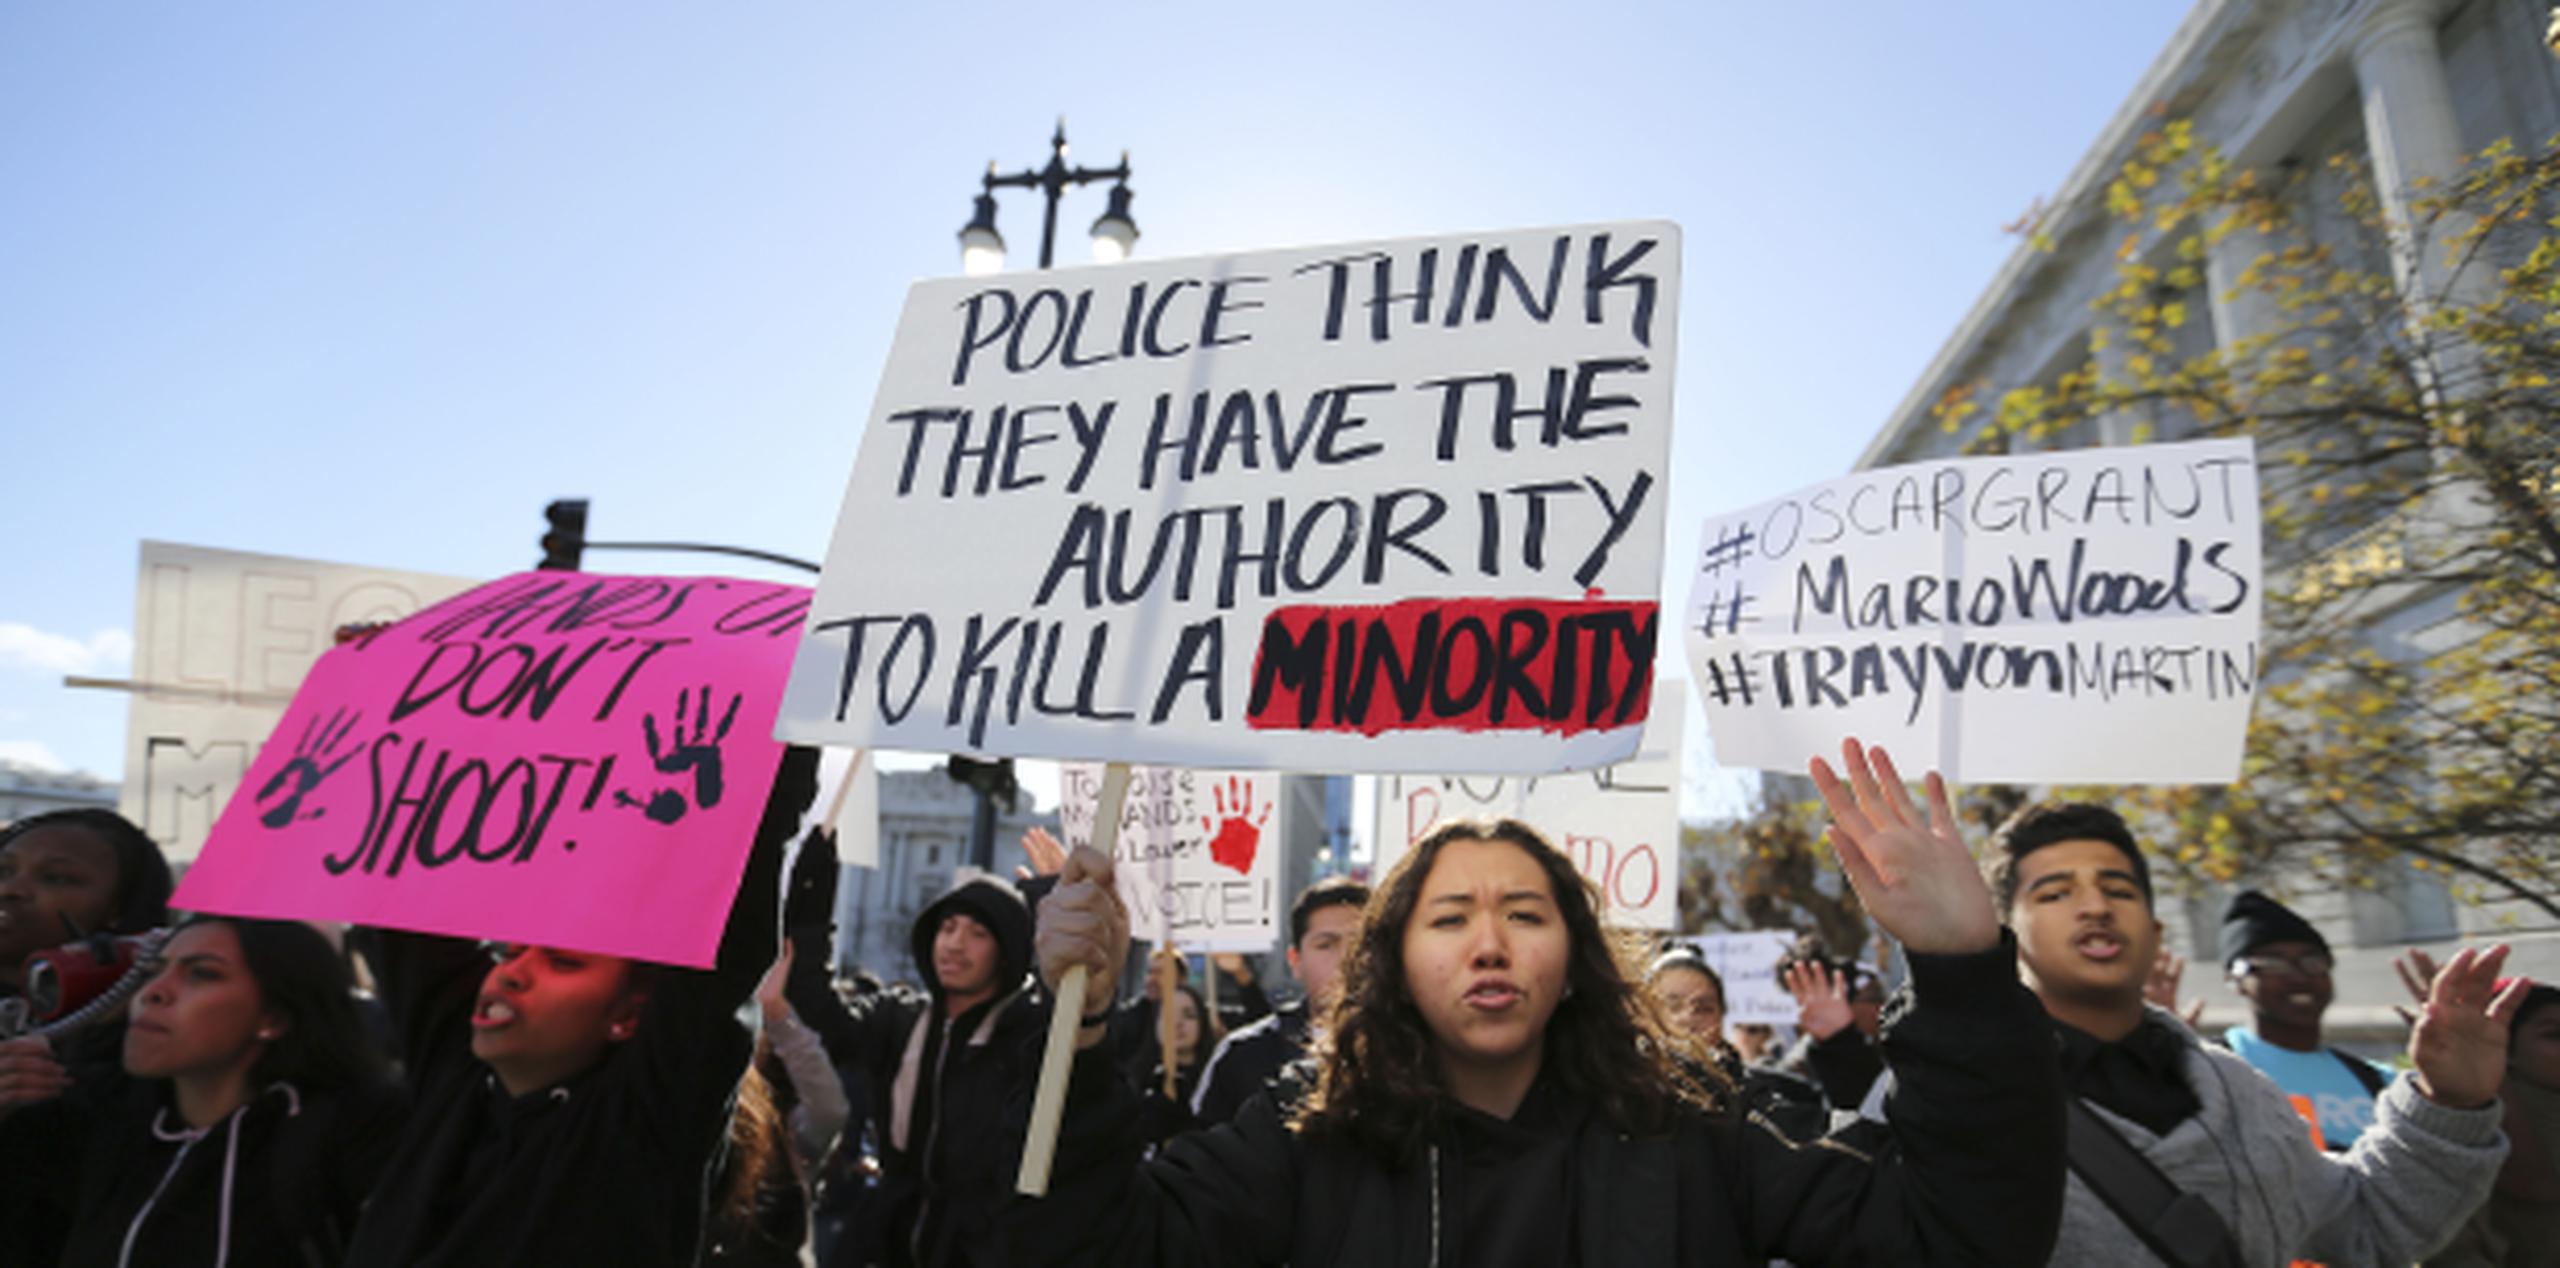 Docenas de manifestantes marcharon el viernes por las calles hasta el ayuntamiento de San Francisco. Algunos llevaban carteles pidiendo la dimisión de Suhr. La policía montaba guardia a distancia. (AP)